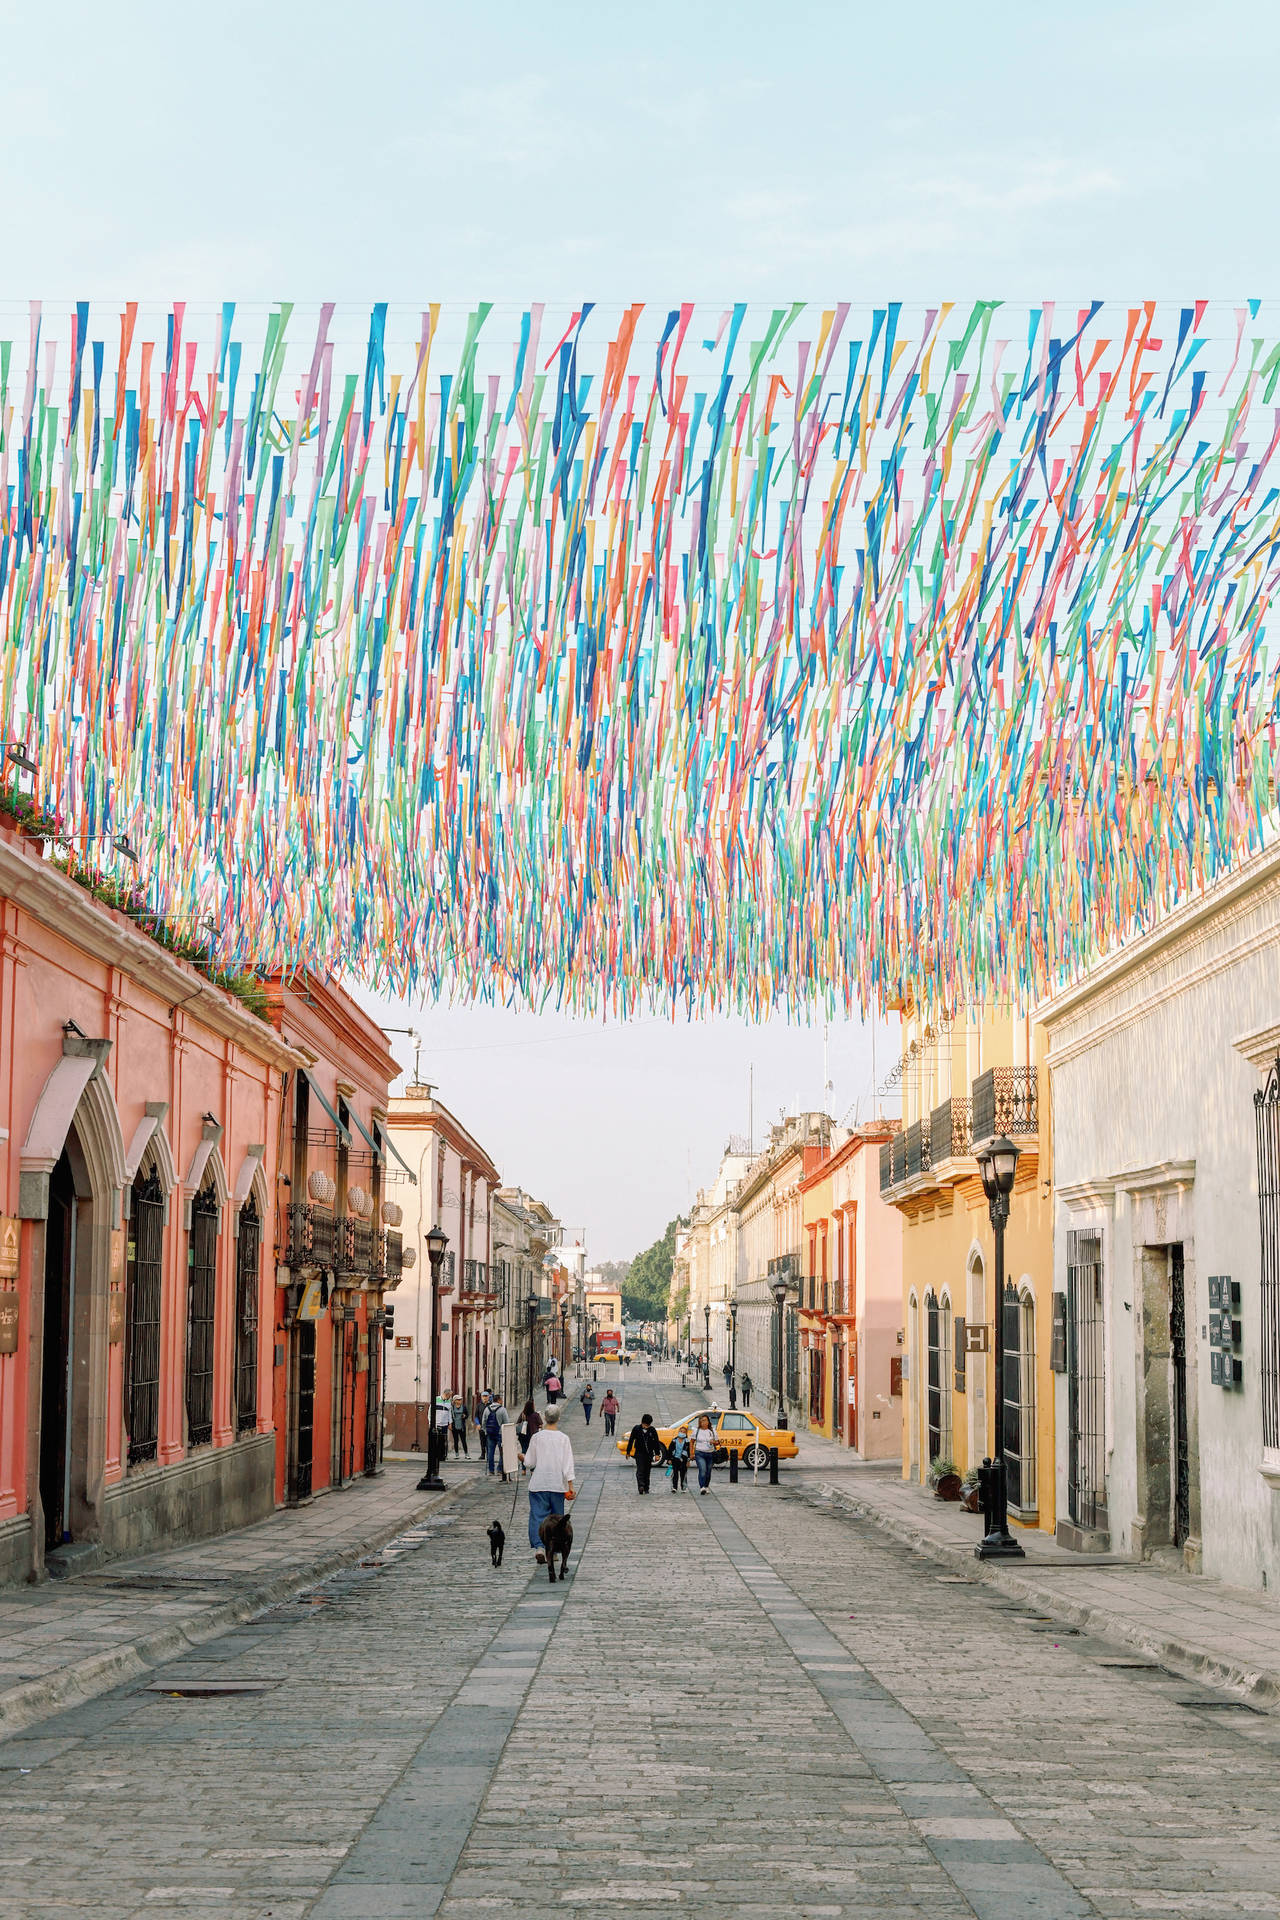 Oaxaca Festival af farver: En farverig væg, der minder om et mexicansk feriefest. Wallpaper